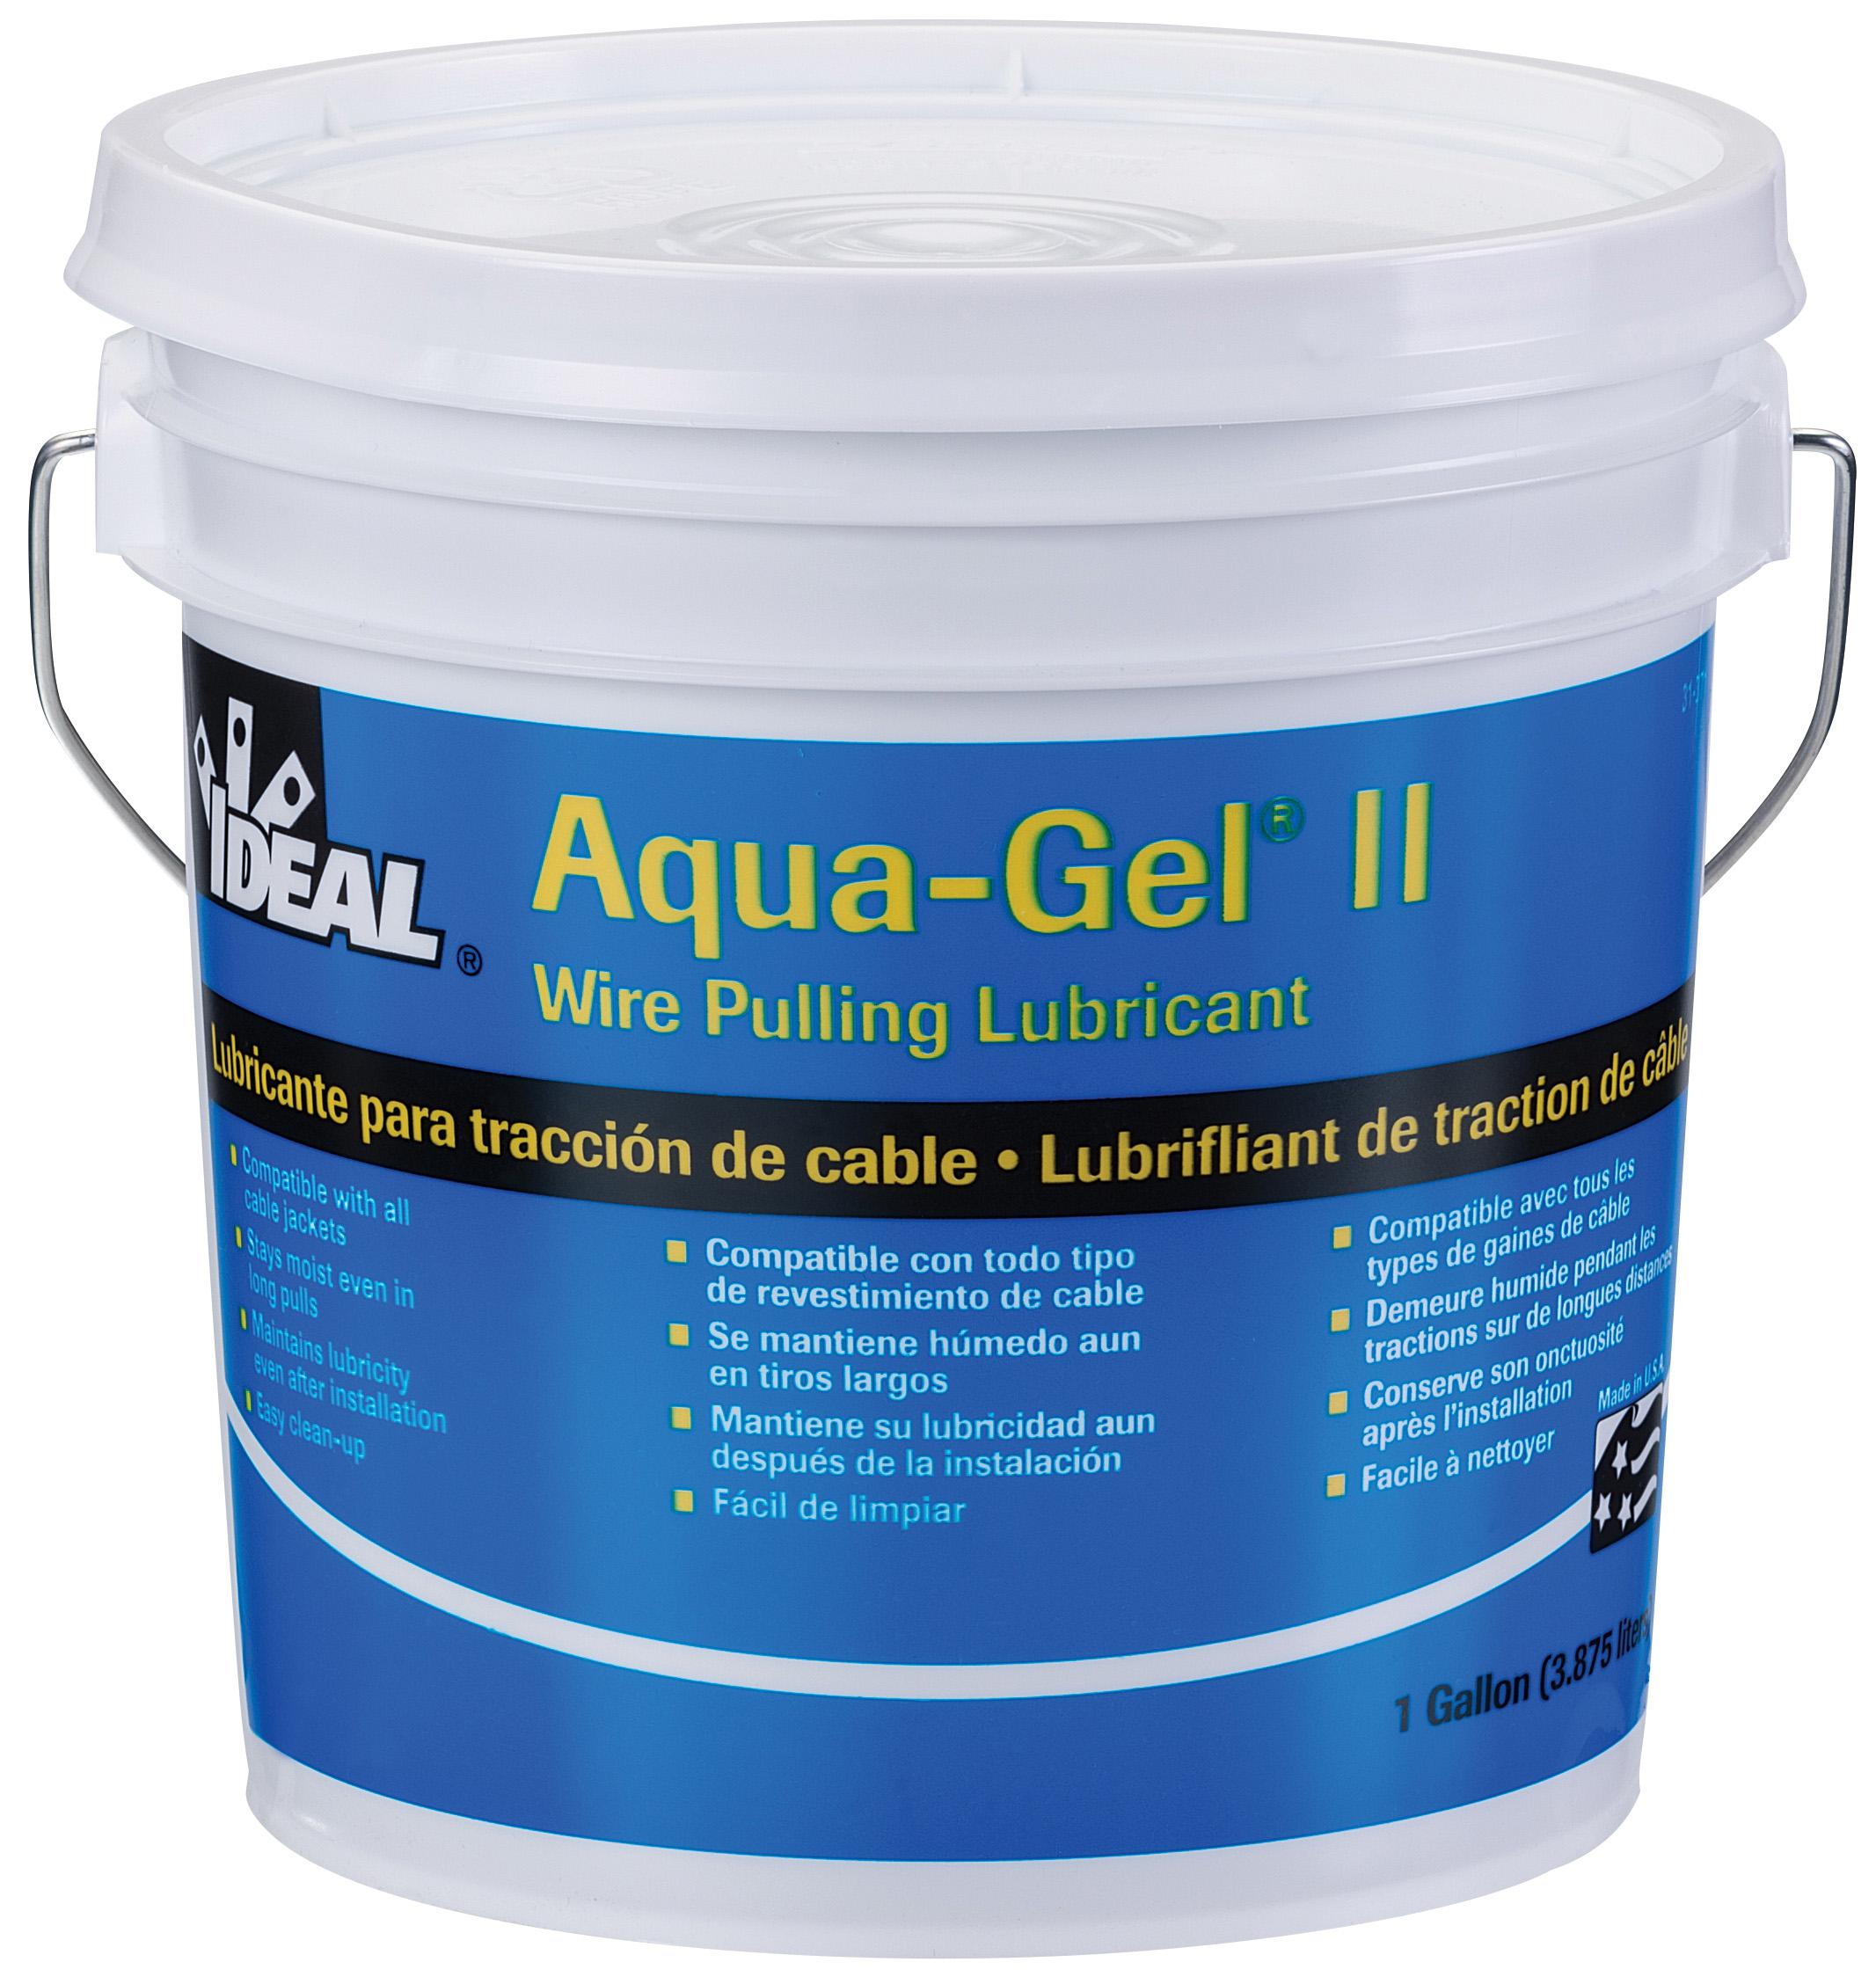 31371 - Aqua-Gel Ii, 1-Gallon Bucket - Ideal